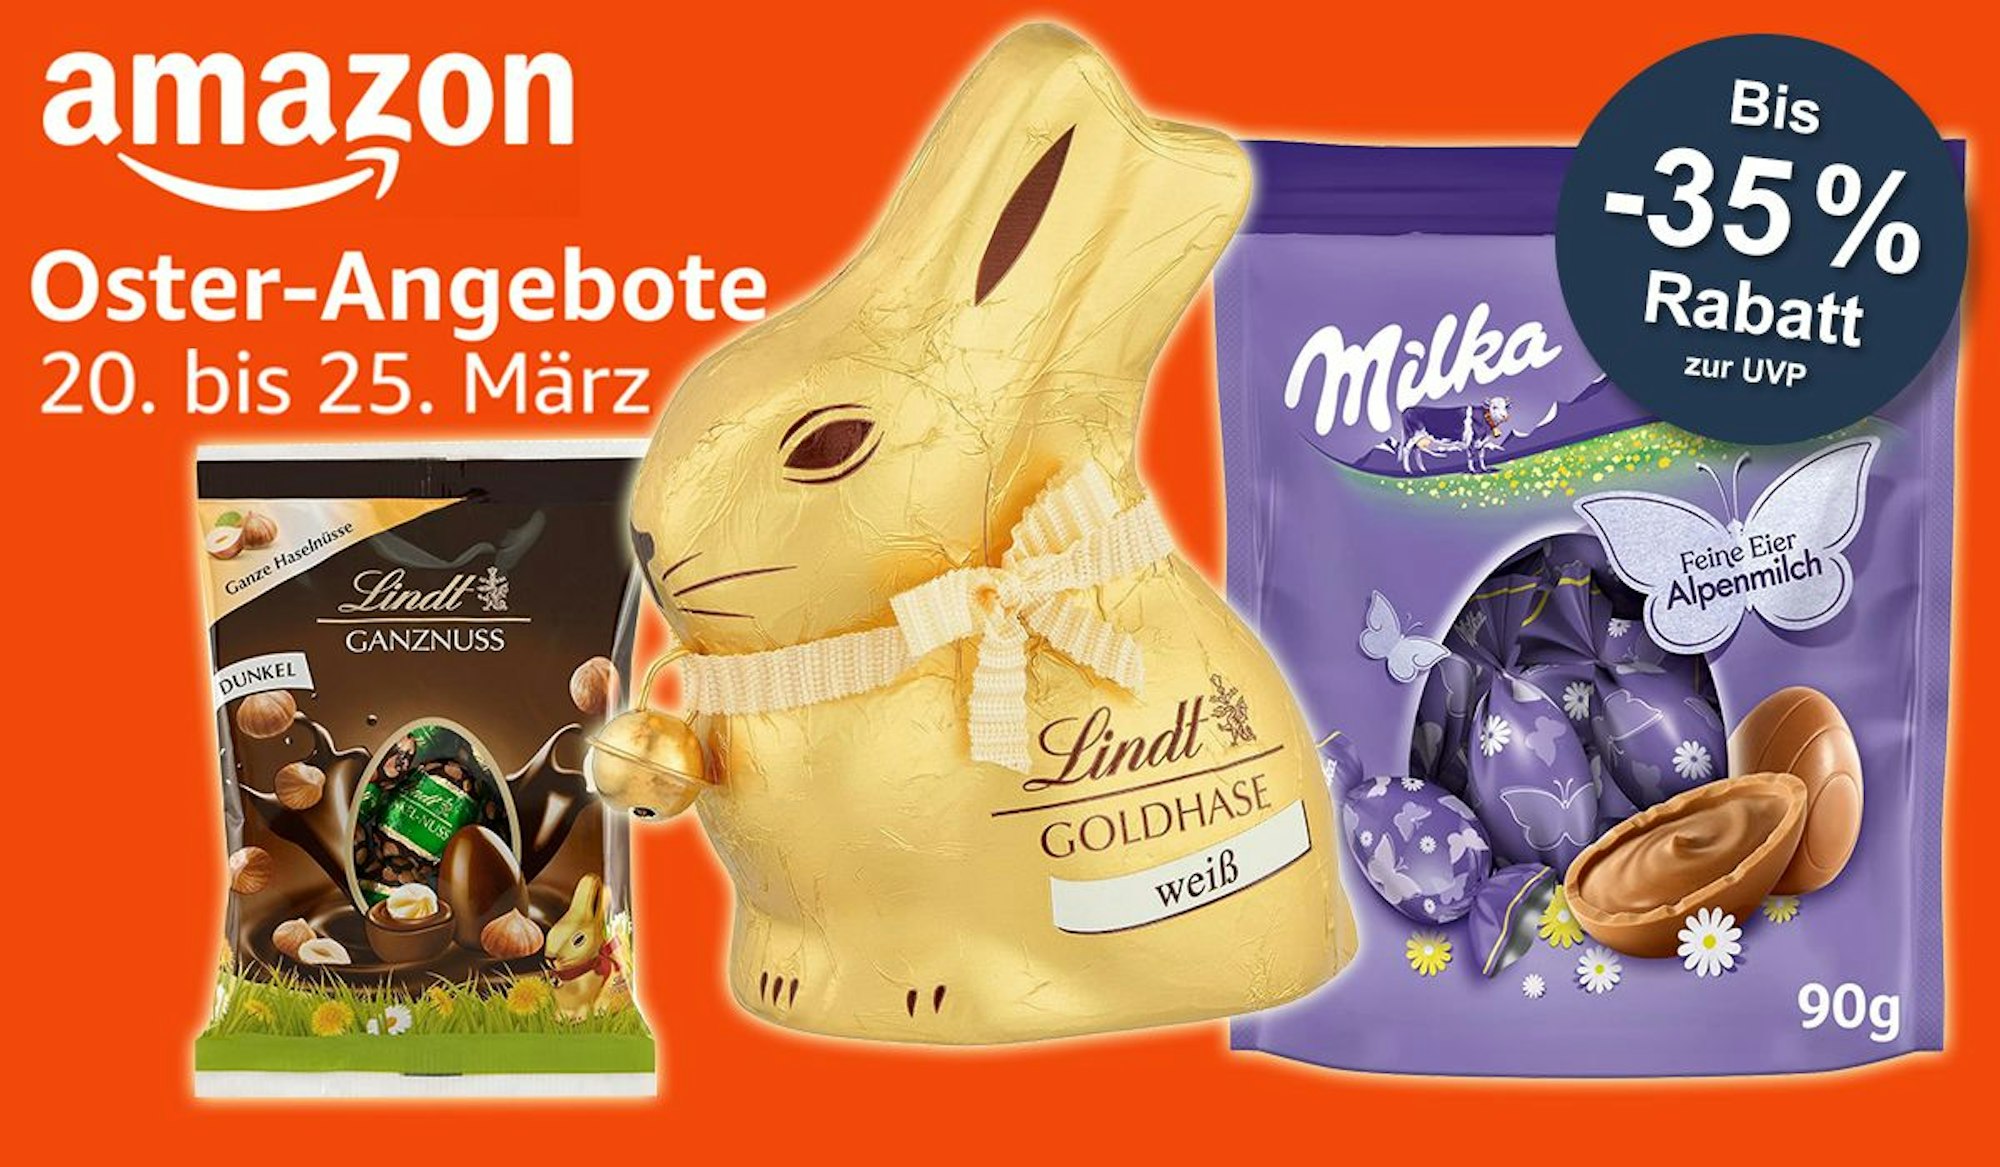 Jetzt bis zu 35% Rabatt auf Lindt und Milka Schokoladen in den Amazon Oster-Angeboten sichern!